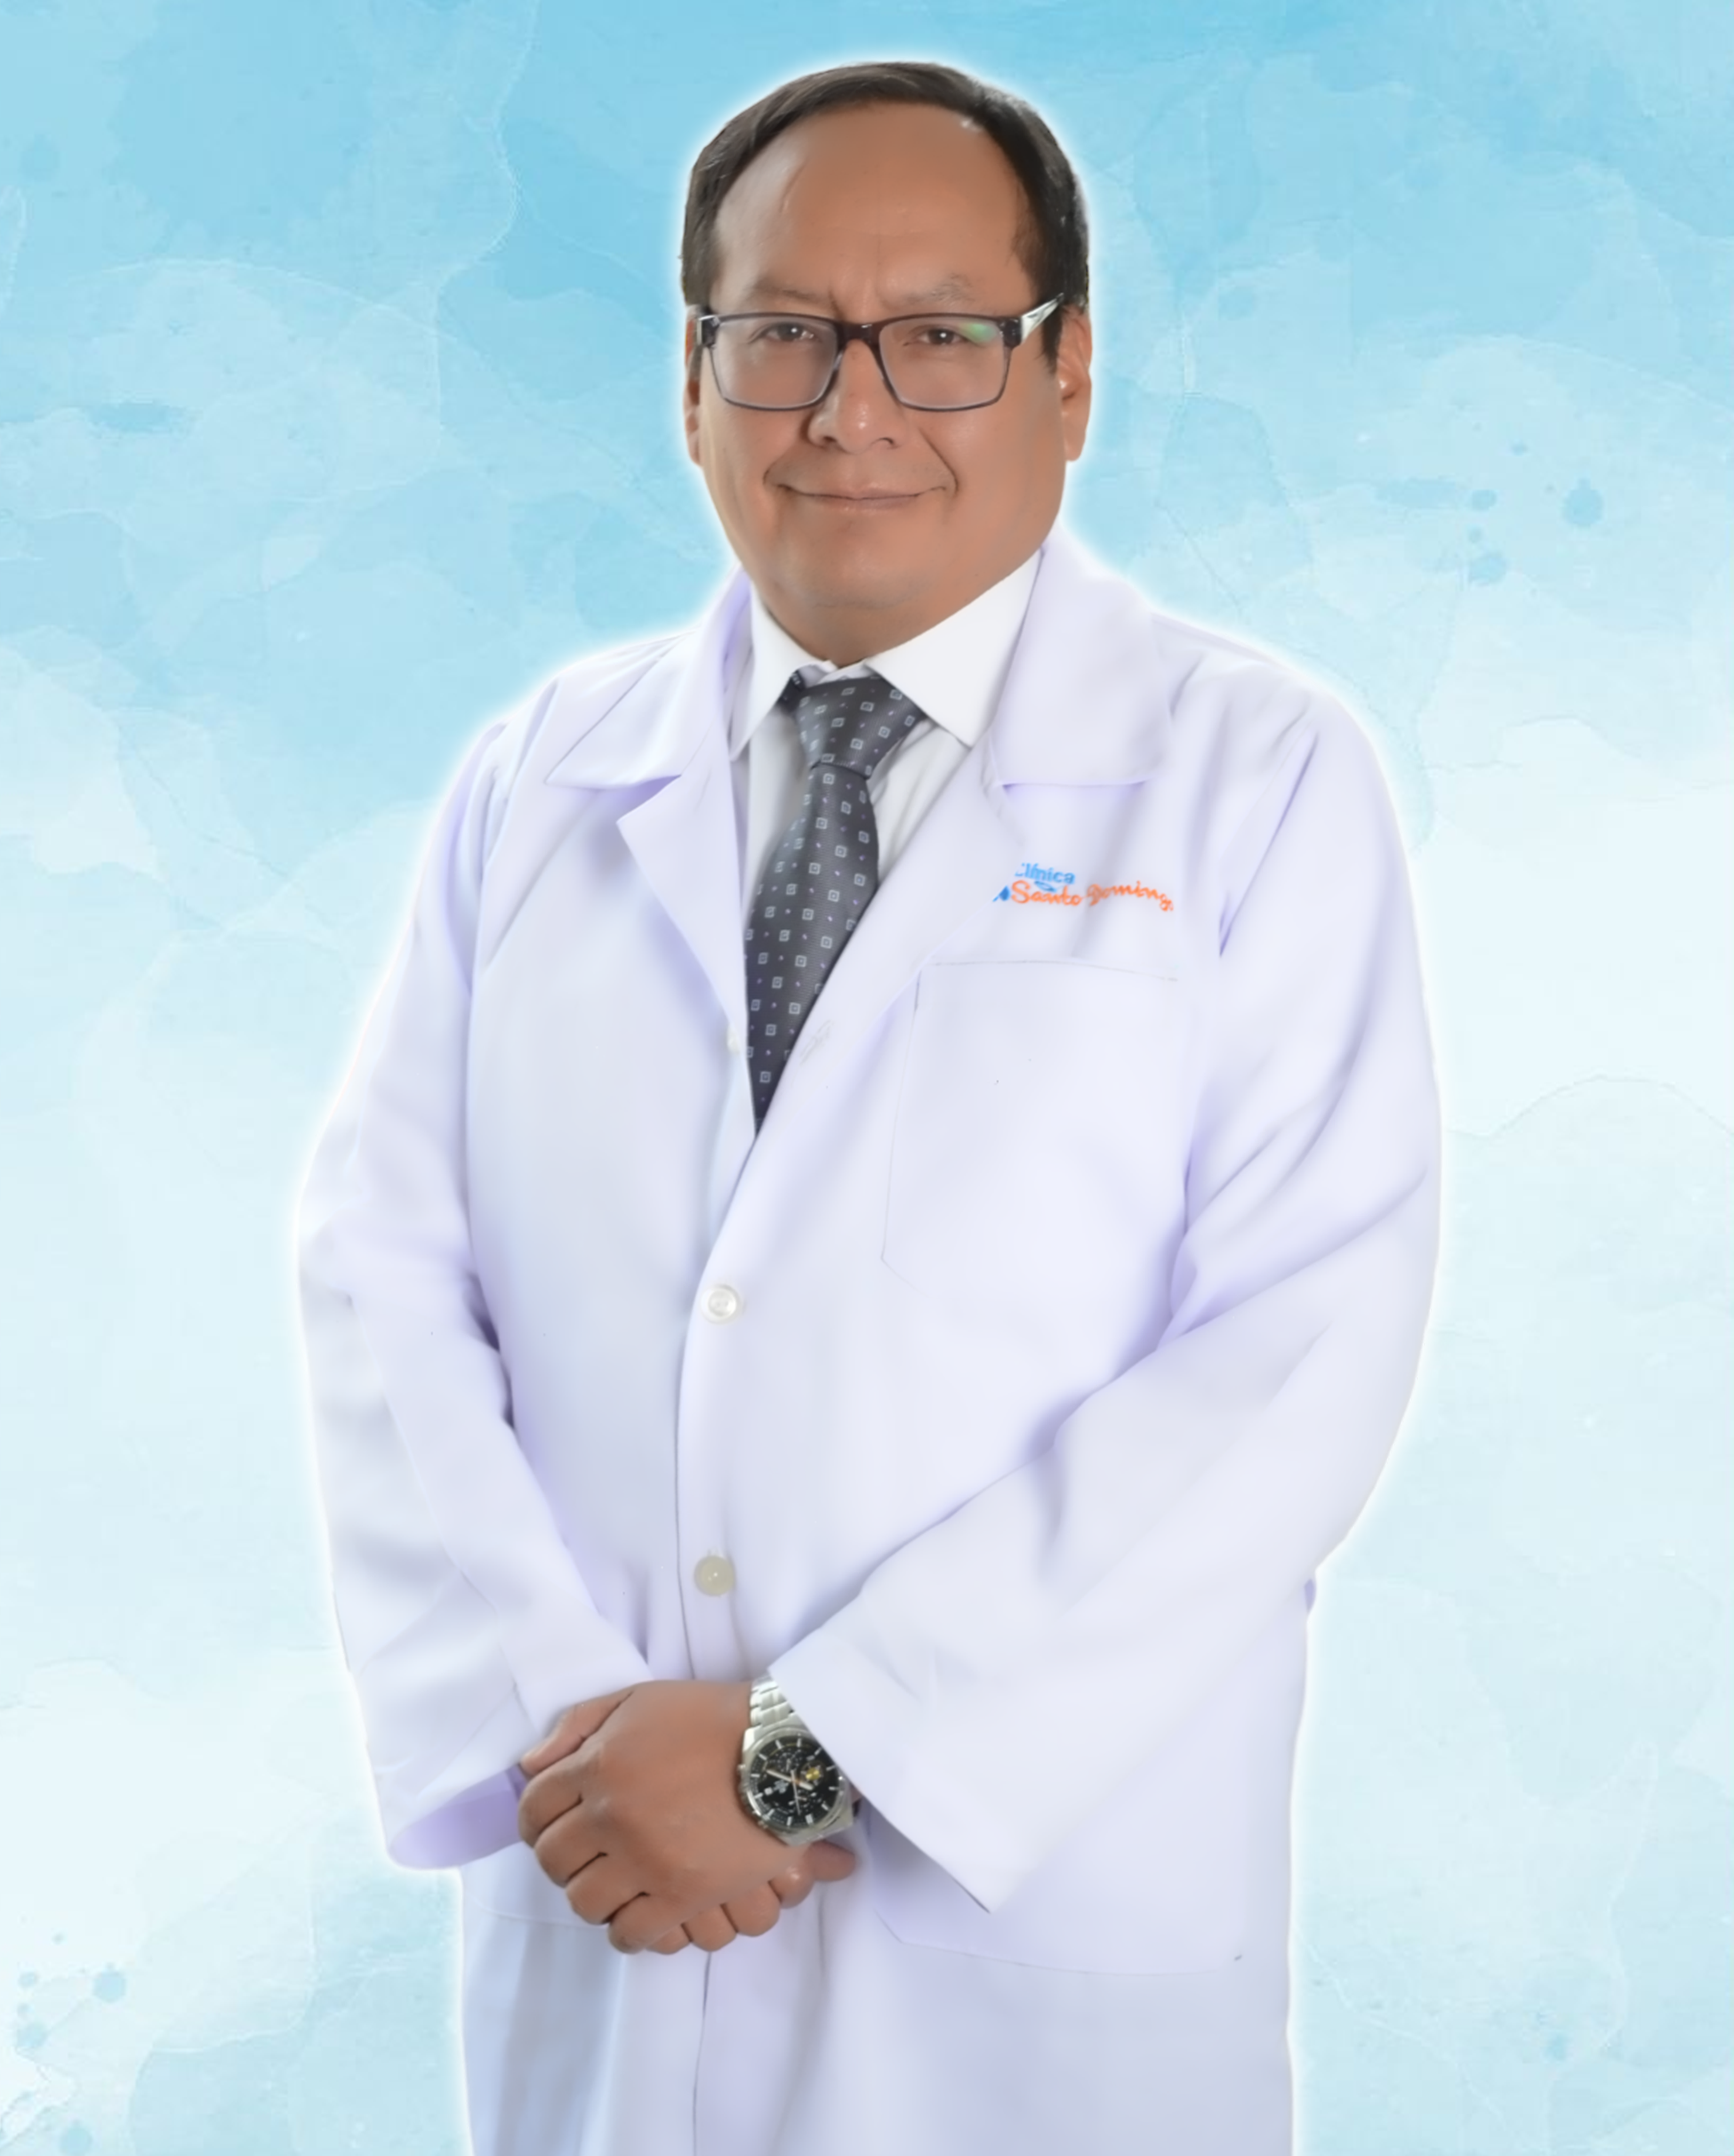 DR EGOAVIL ENDOCRINOLOGO (1)